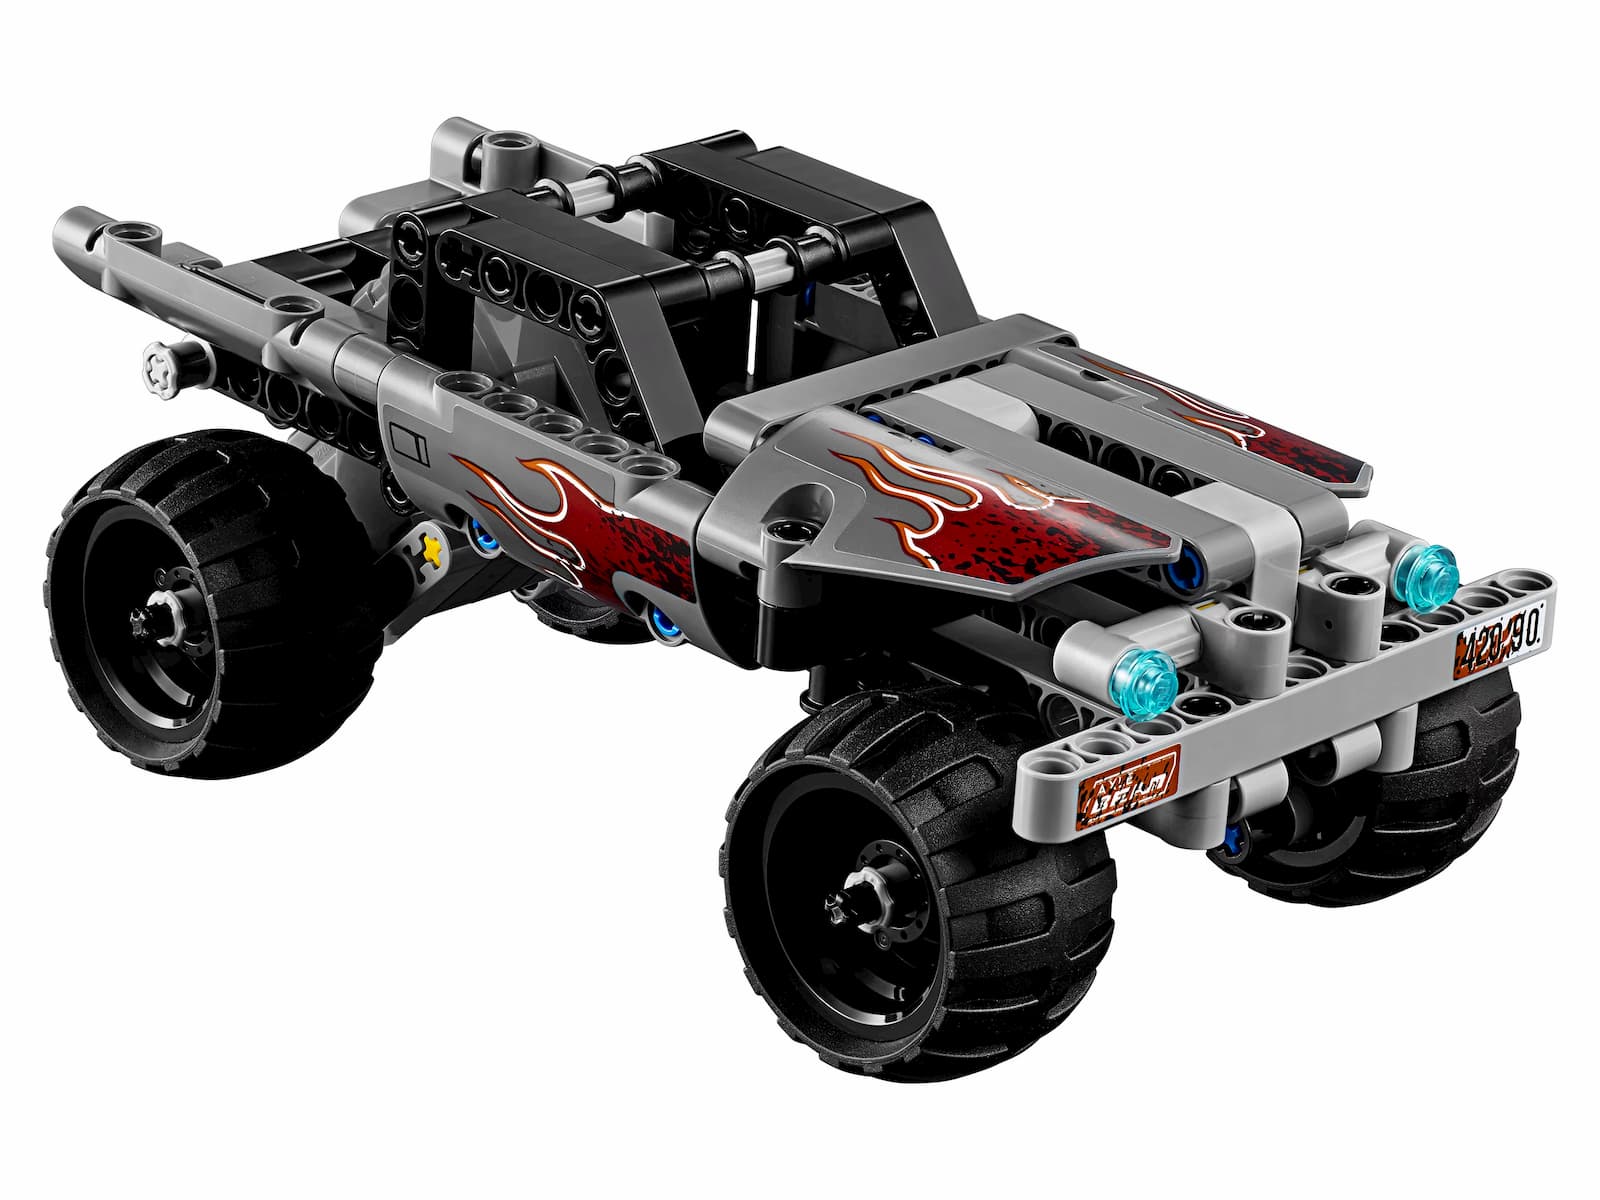 Конструктор LEGO Technic «Машина для побега» 42090, 128 деталей